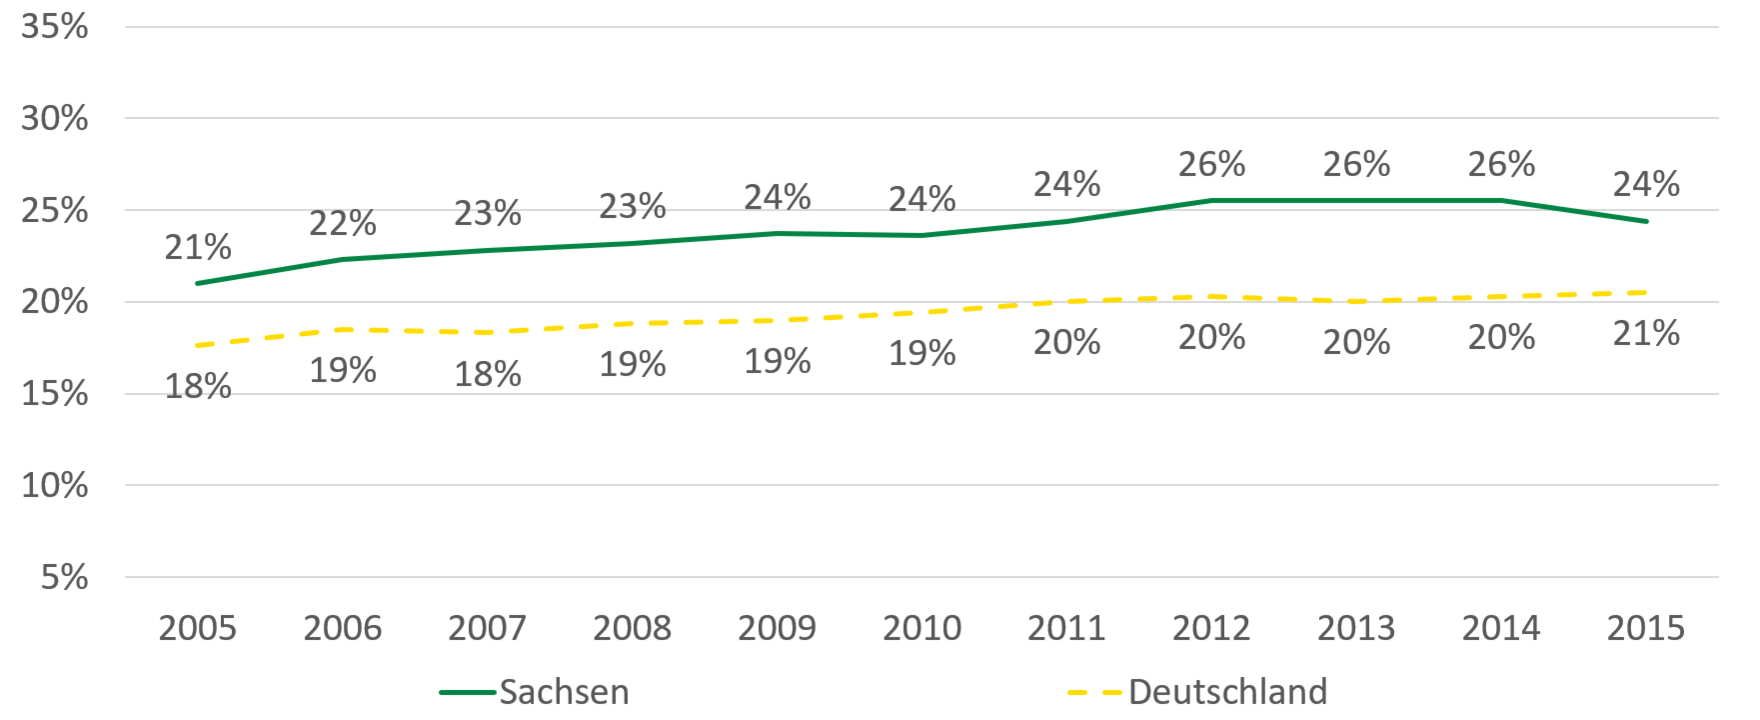 Die Zahl der Alleinerziehenden in Sachsen stieg von 21 Prozent im Jahr 2005 bis auf 26 Prozent im Jahr 2014 und sank bis 2015 auf 24 Prozent. In Deutschland stieg die Zahl der Alleinerziehenden von 18 Prozent im Jahr 2005 auf 21 Prozent im Jahr 2015.